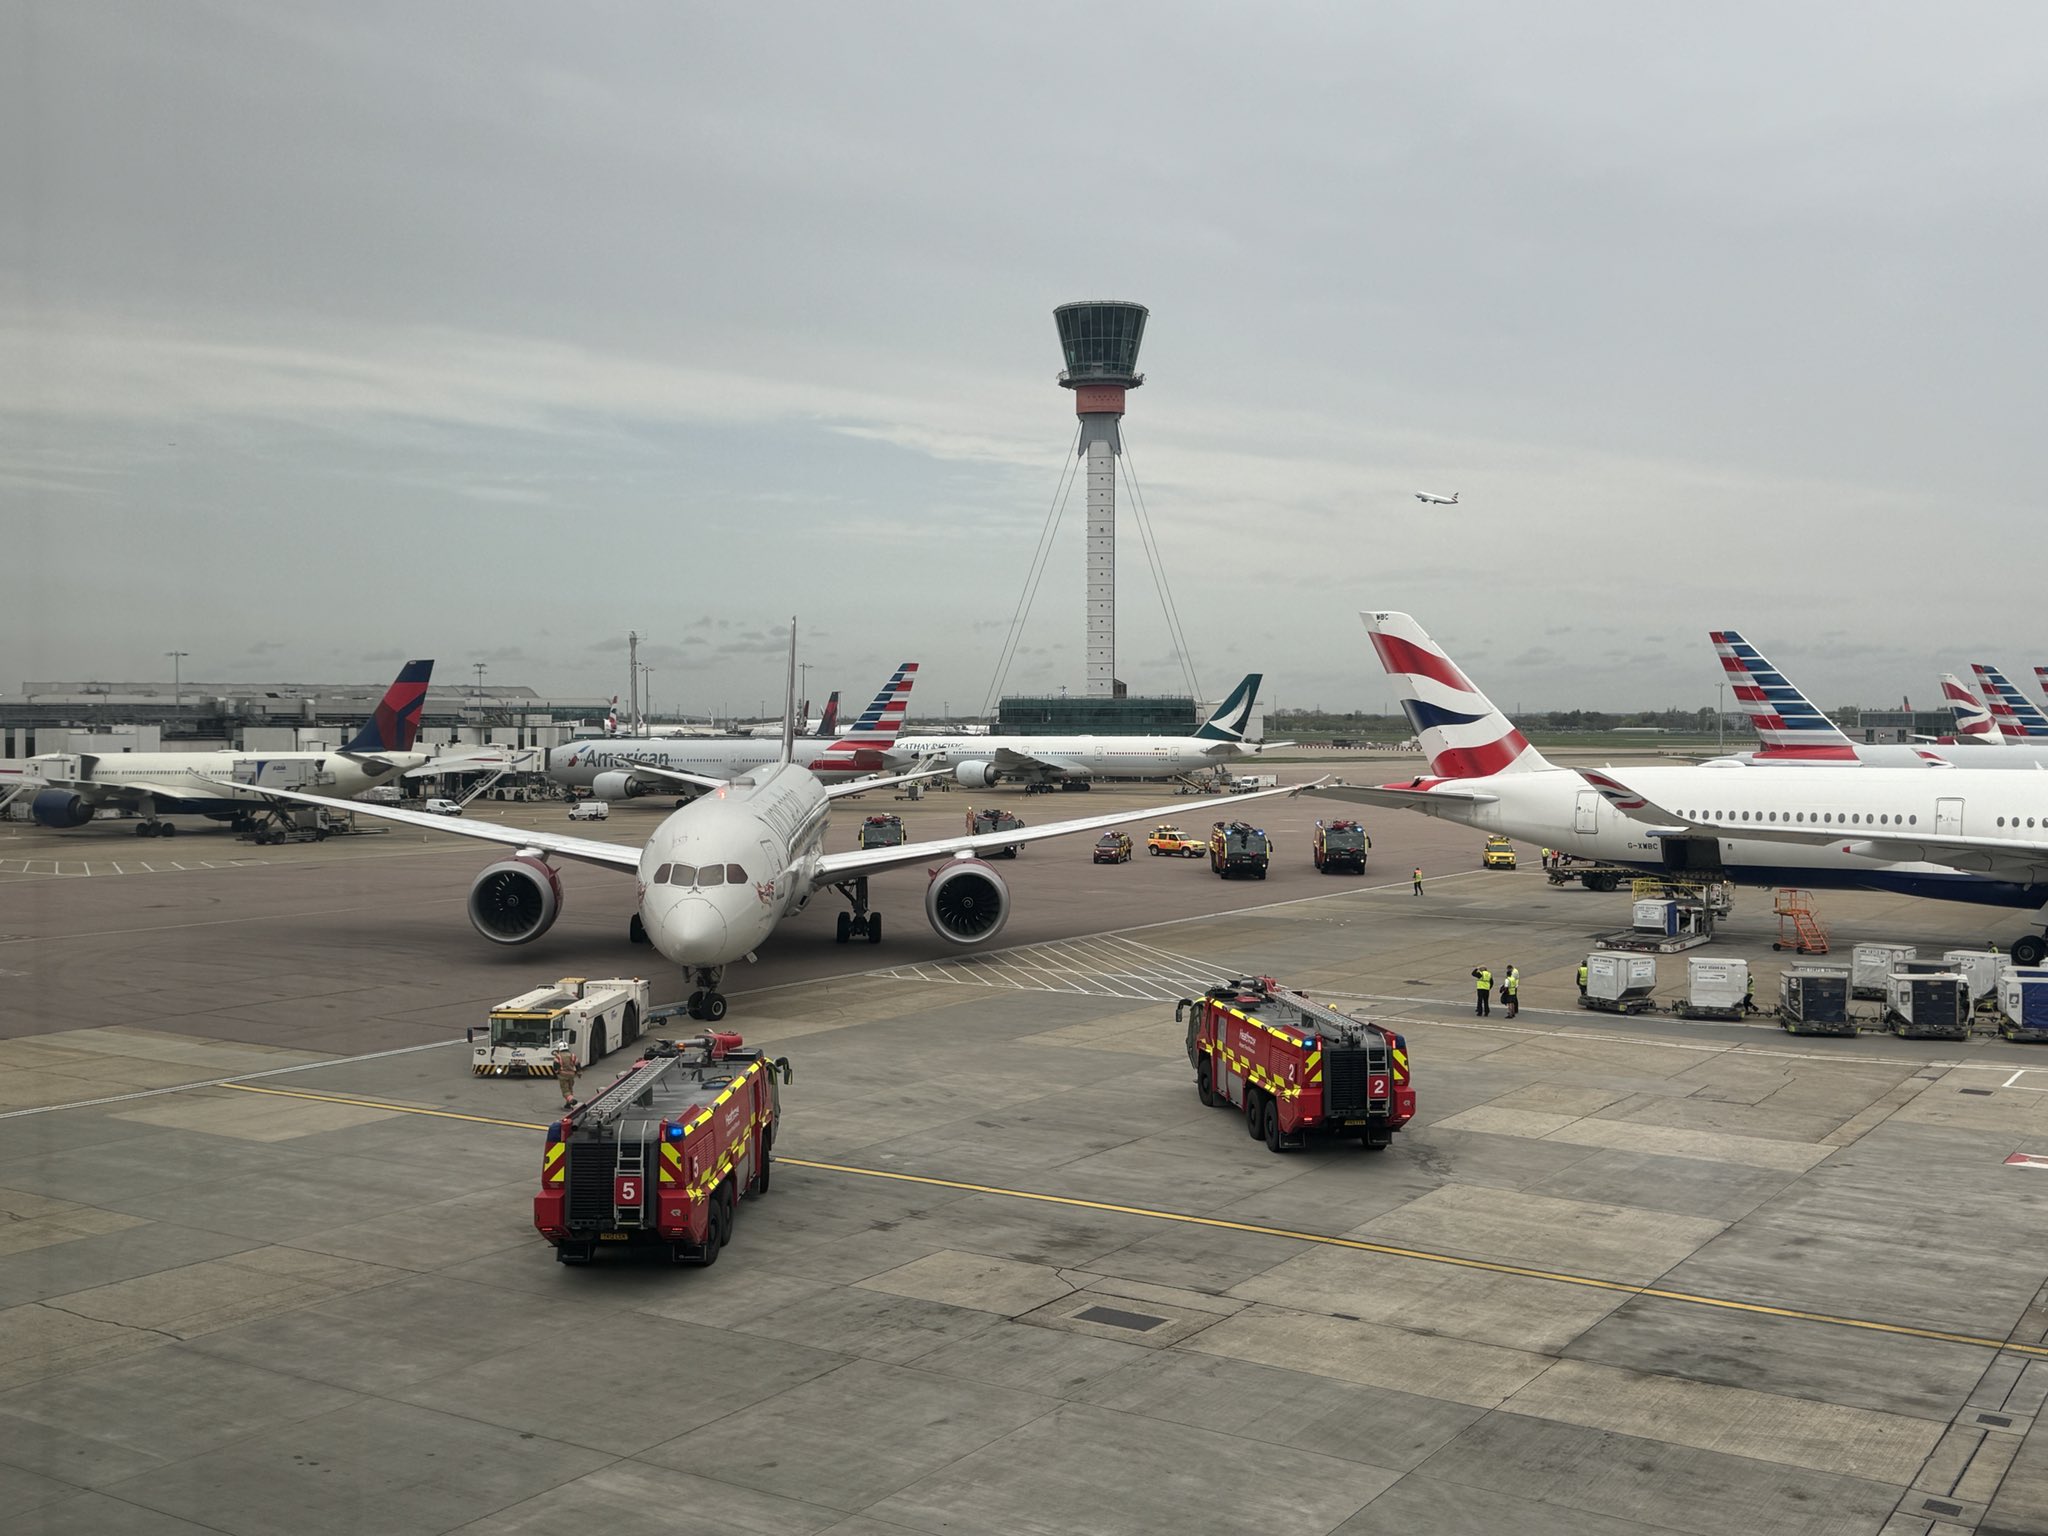 British Airways a été identifiée comme la compagnie aérienne avec la politique de bagages à main la plus généreuse